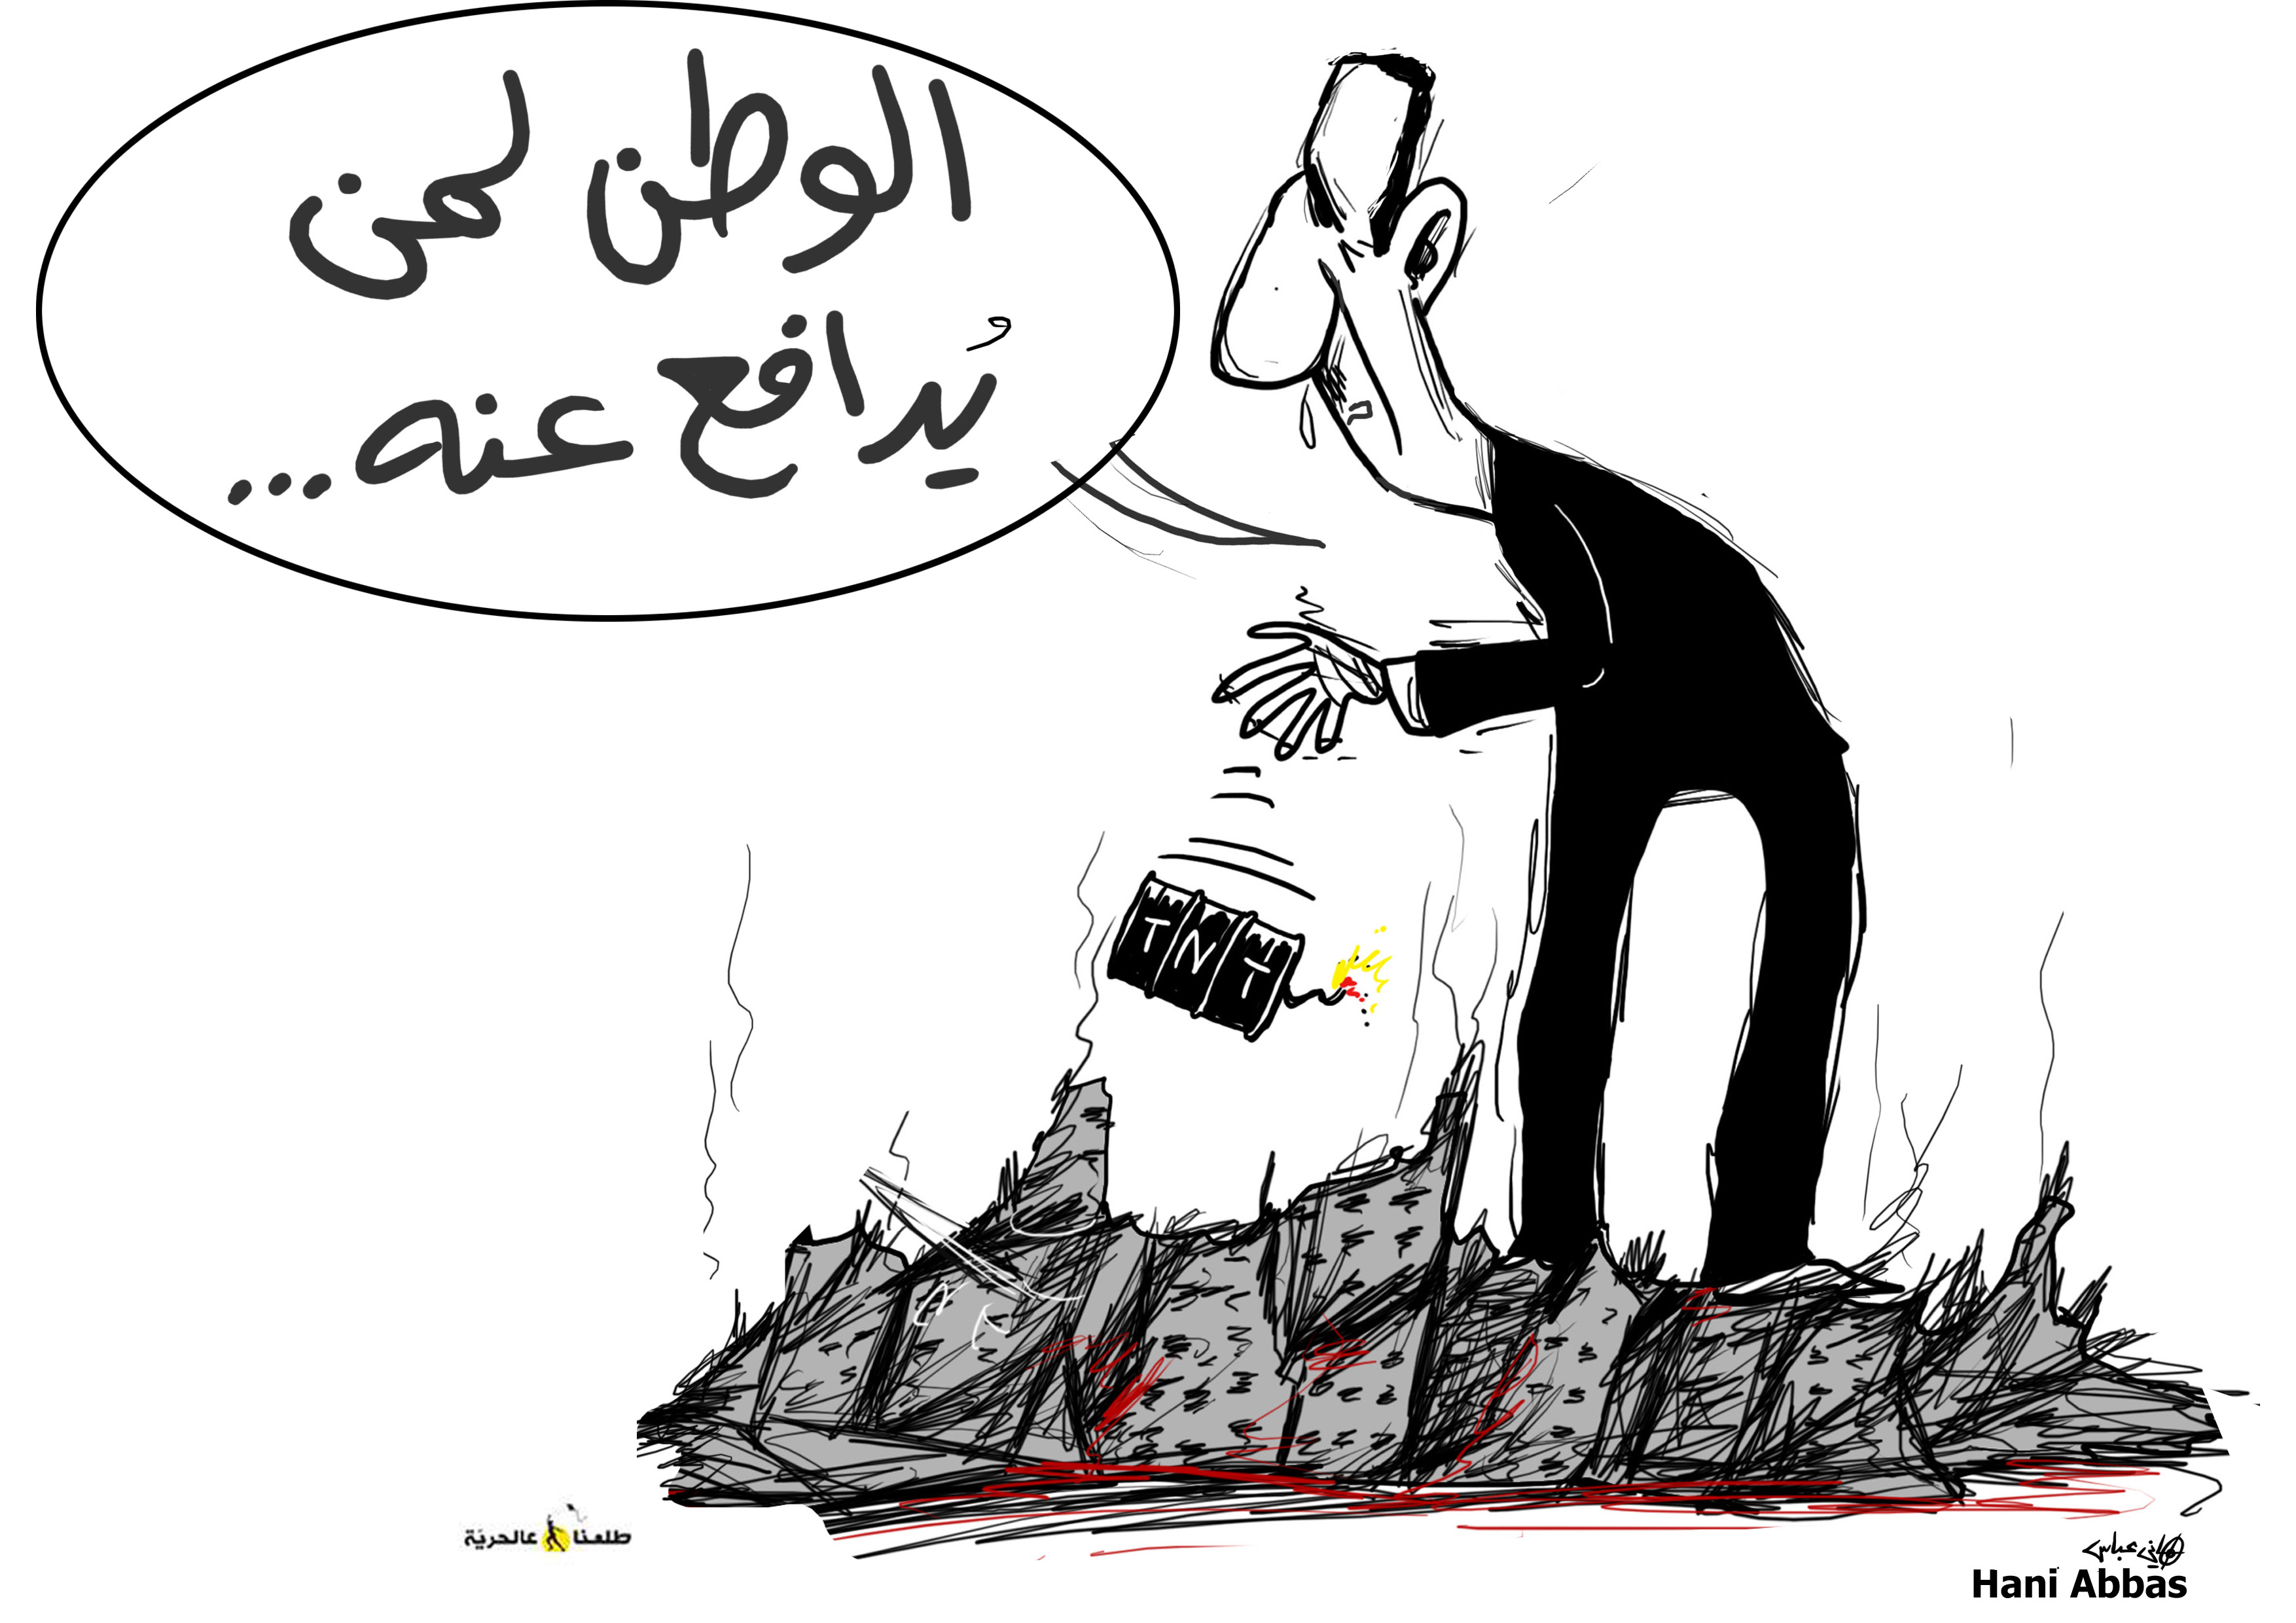 اللوحة من صفحة الفنان السوري الفلسطيني هاني عباس على فيسبوك